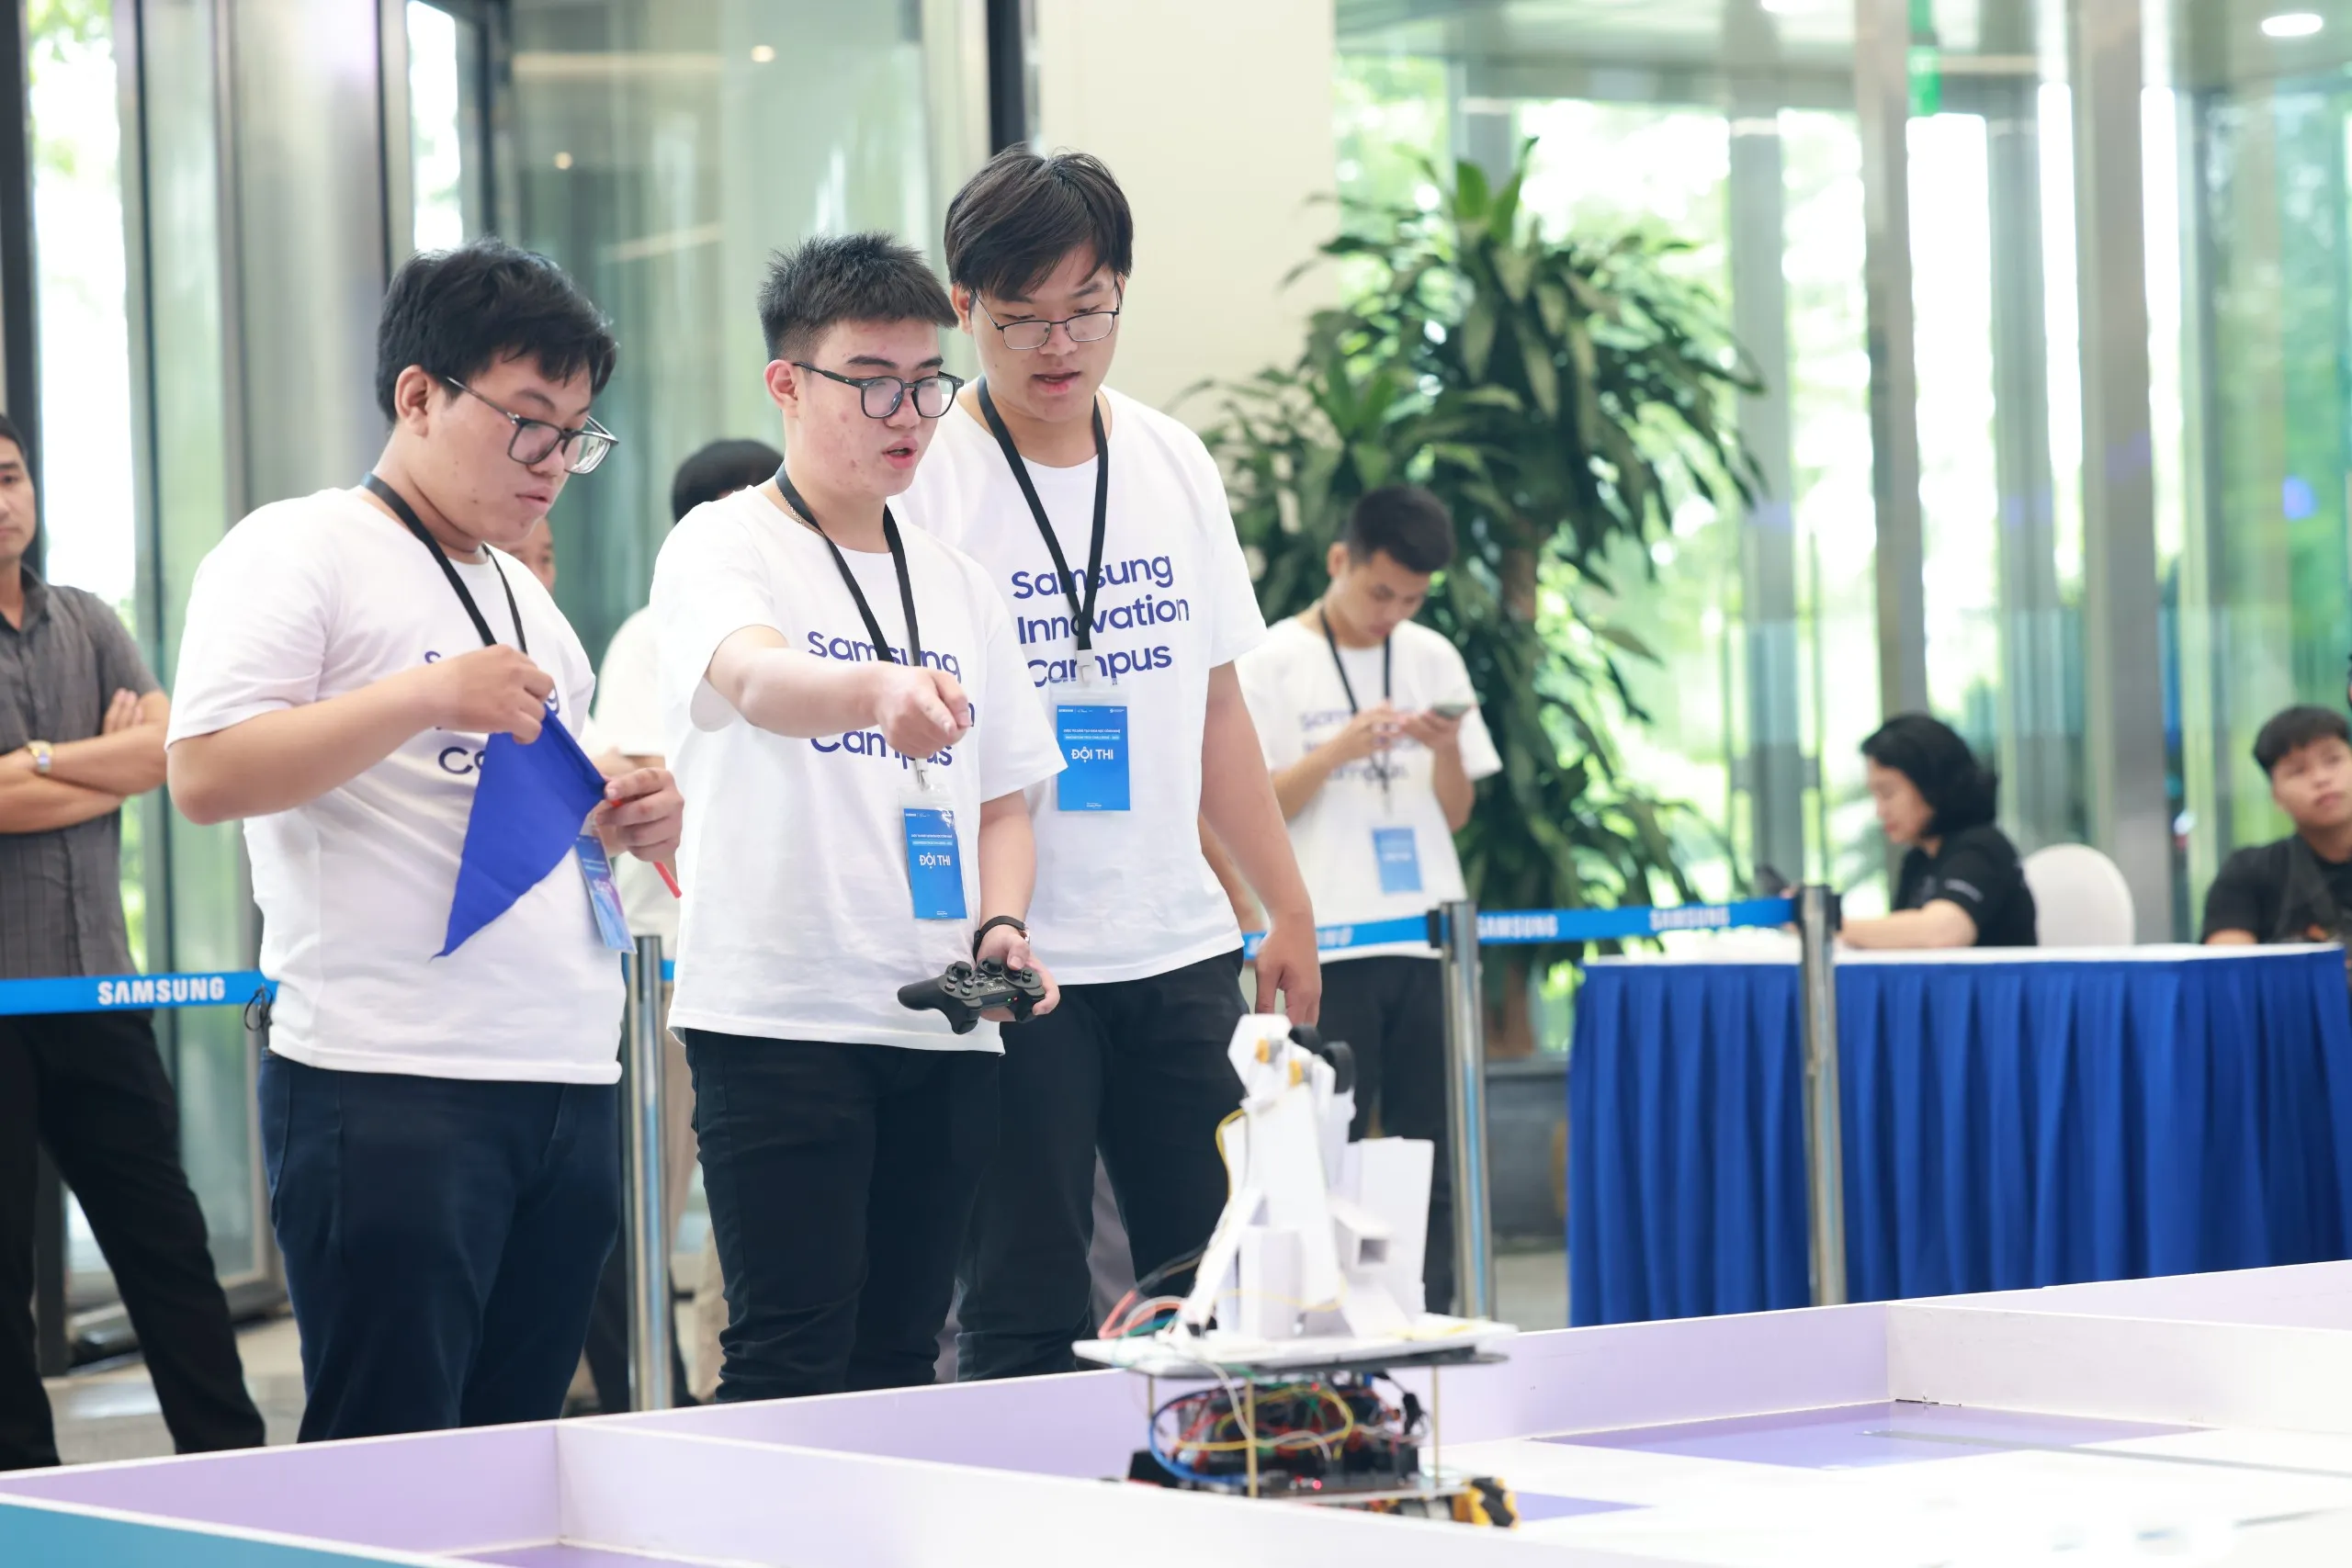 Tổng kết Dự án Phát triển Nhân tài Công nghệ - Samsung Innovation Campus (SIC) 2022 - 2023